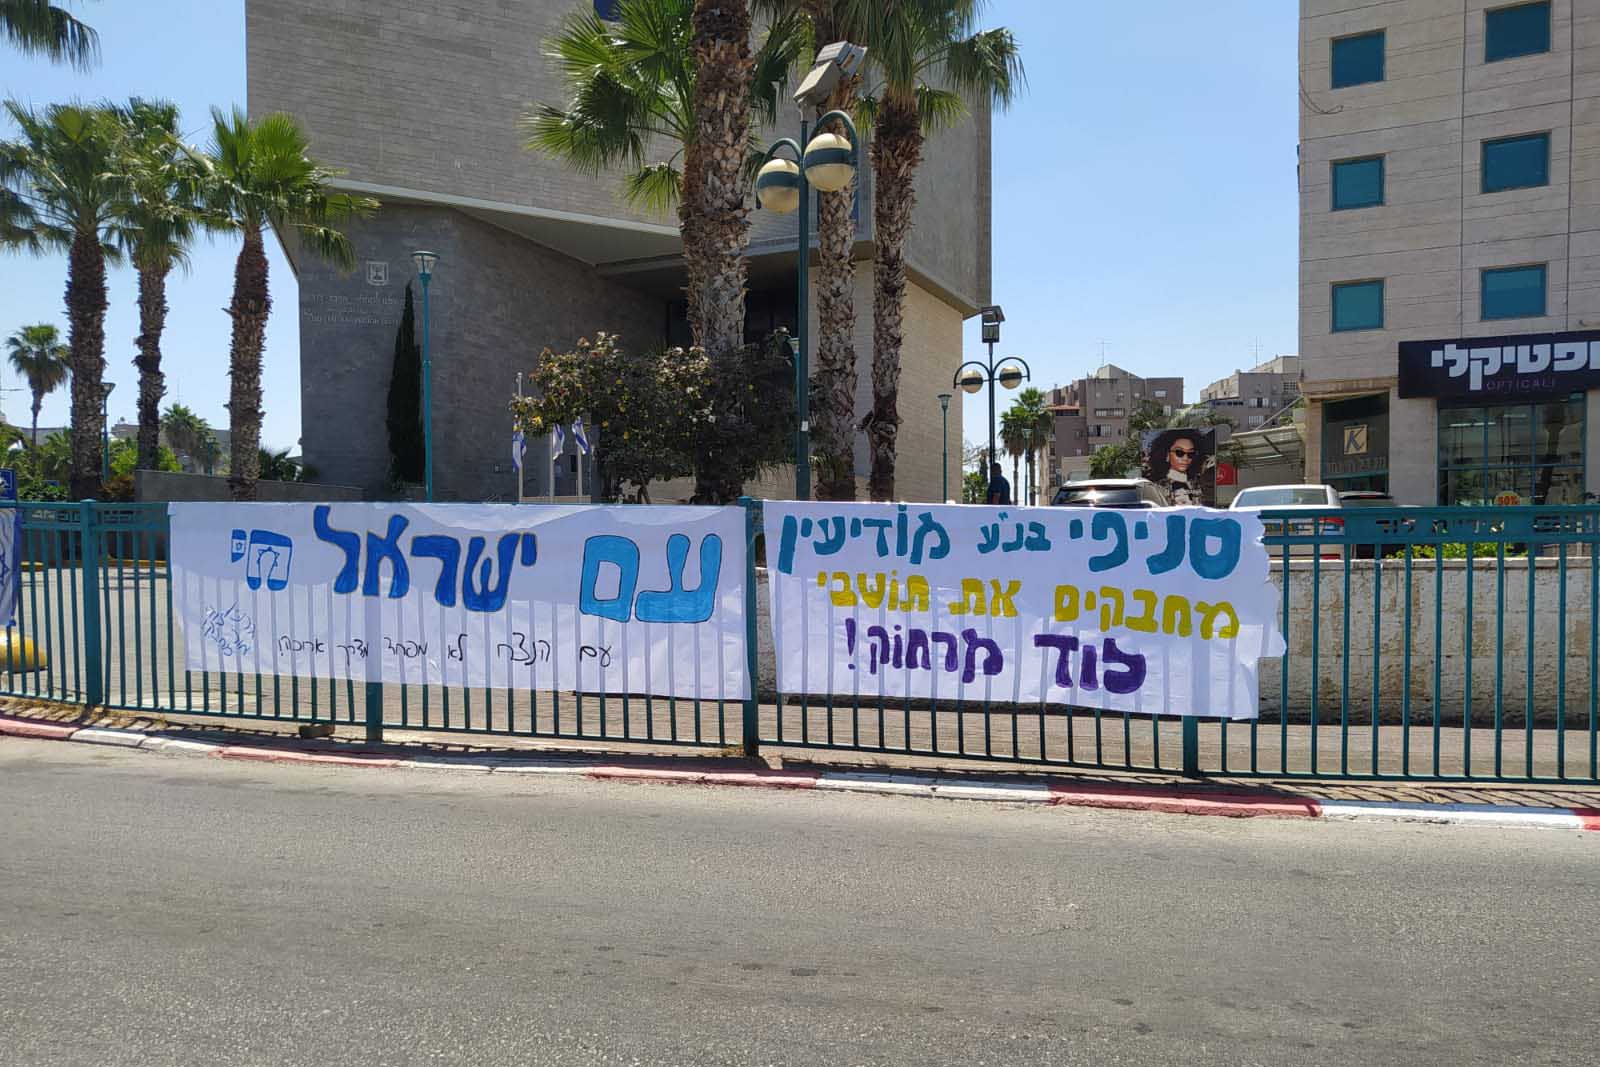 لافتة داعمة للسكان اليهود في اللد، تم تعليقها على يد مرشدي حركة الشبيبة بني عكيفا من موديعين (تصوير: ياهل فرج)